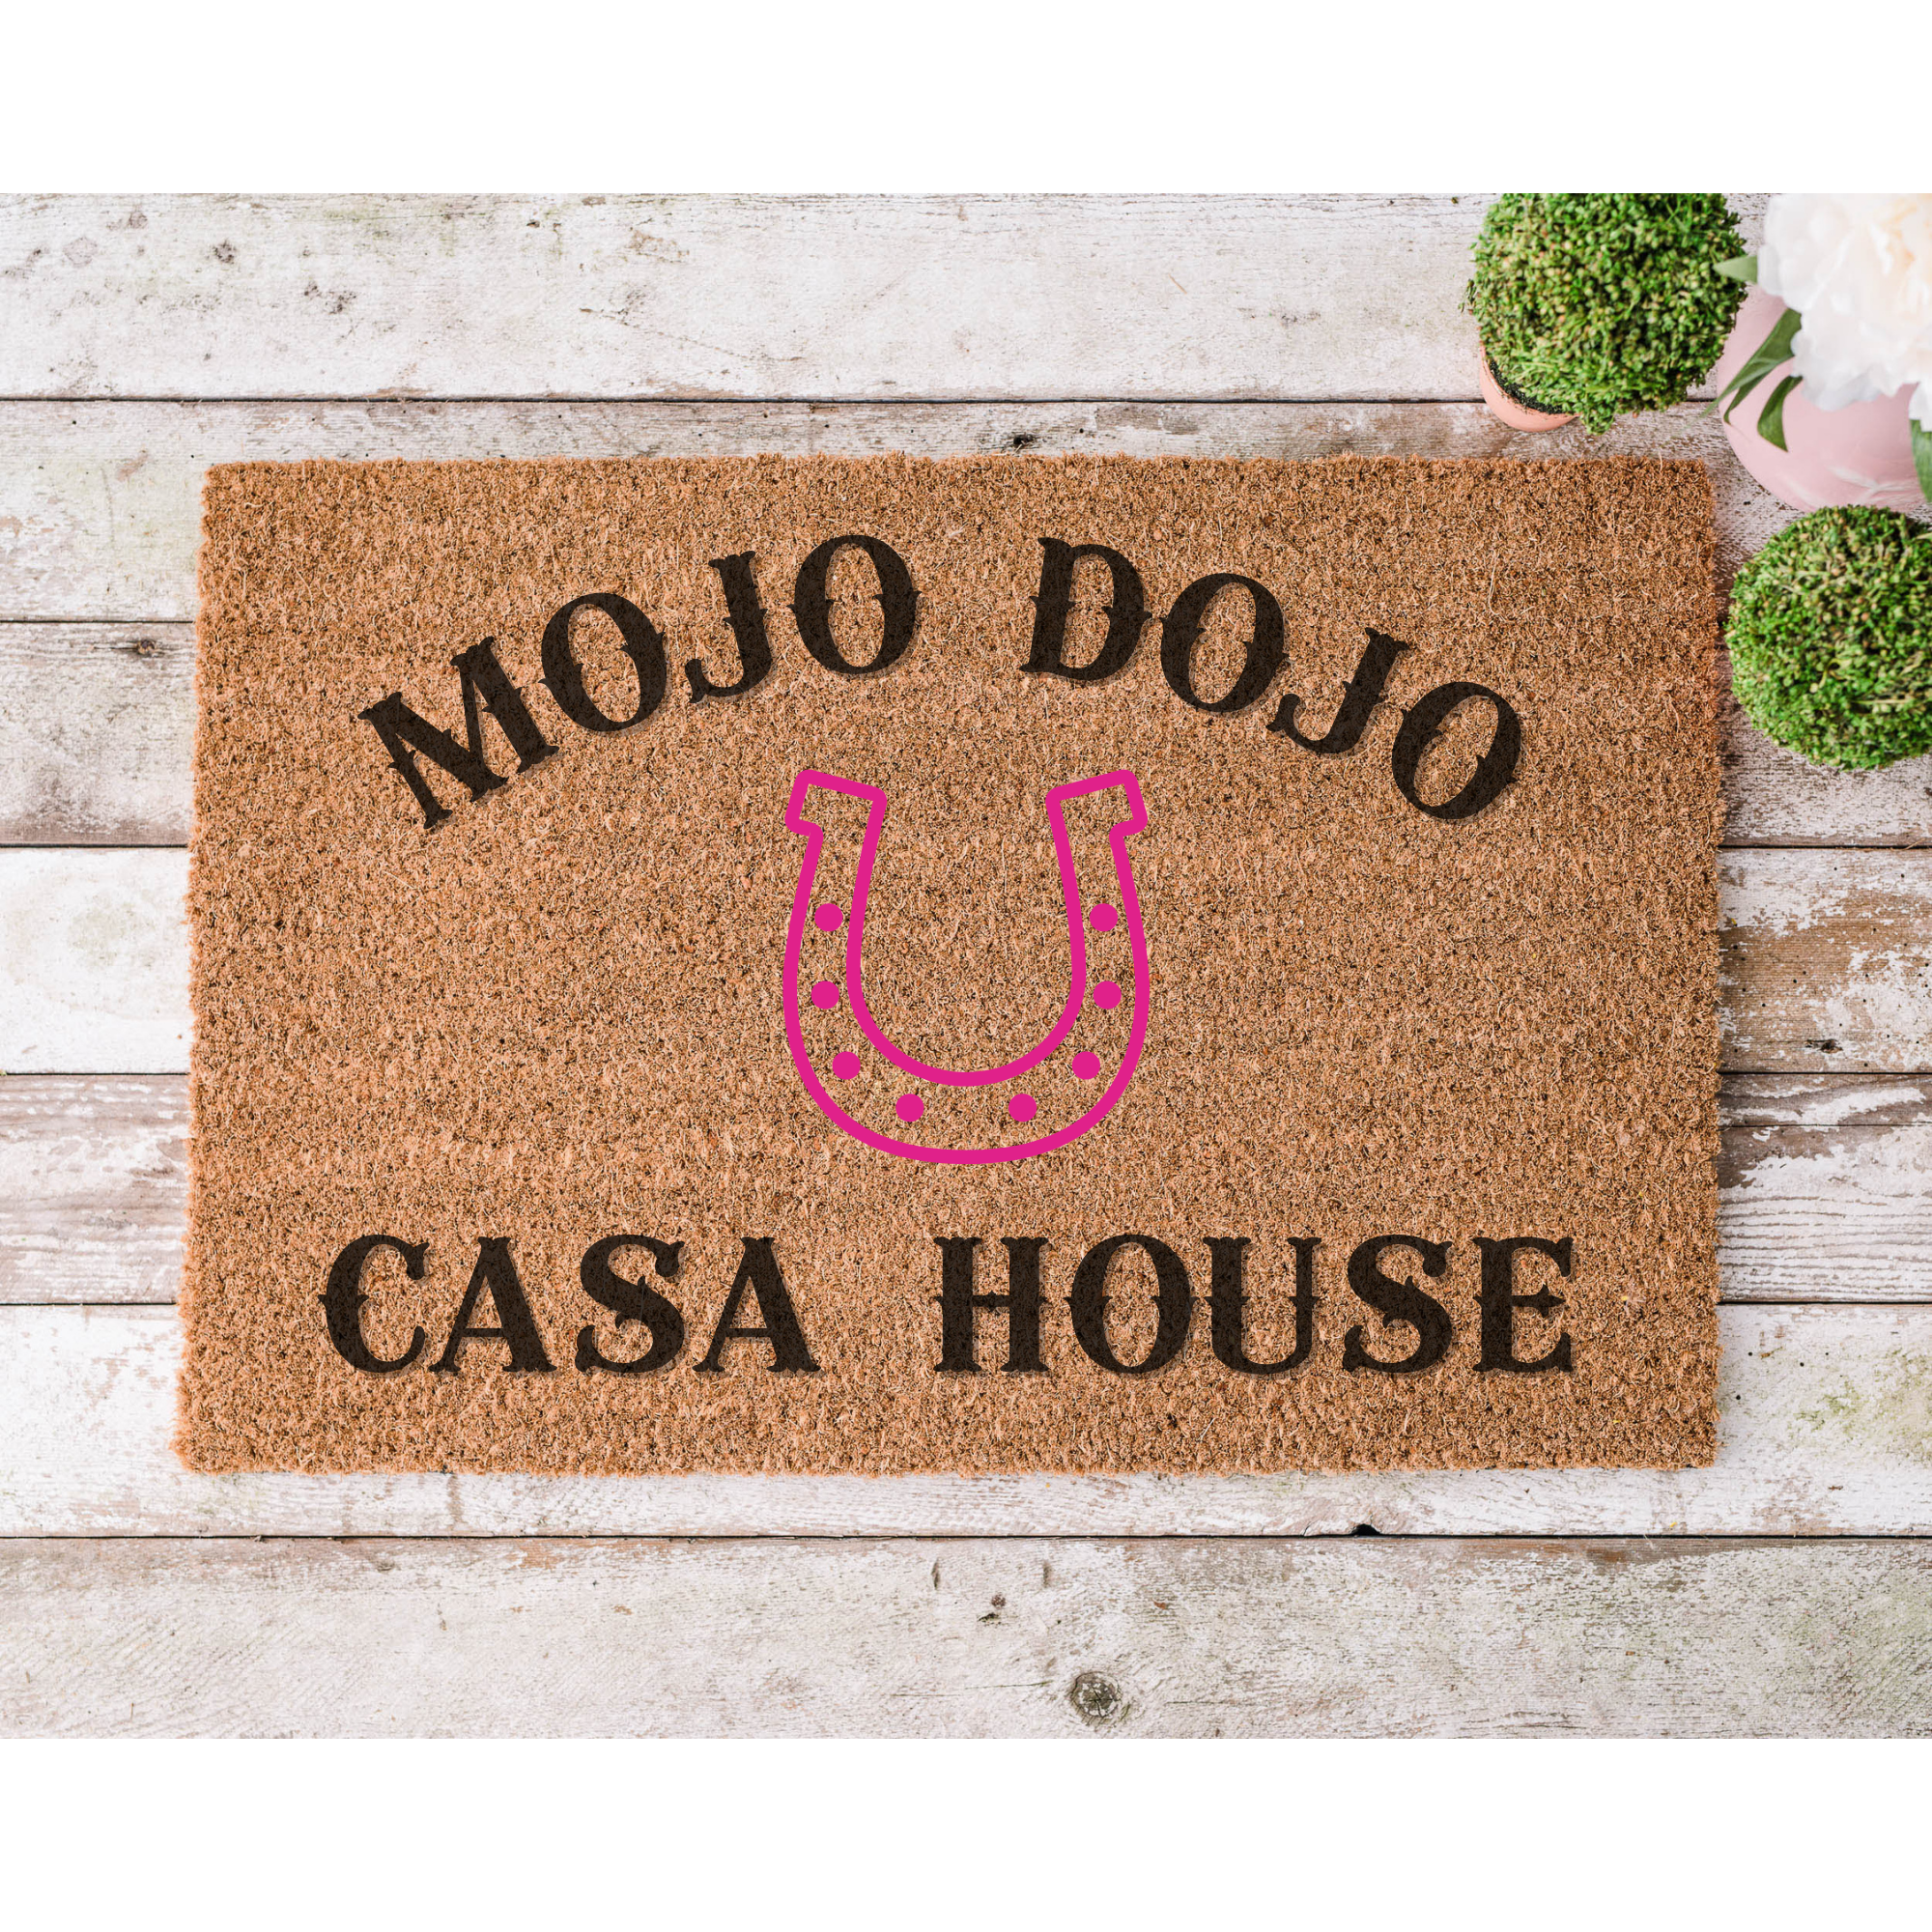 Mojo Dojo Casa House | Tapestry